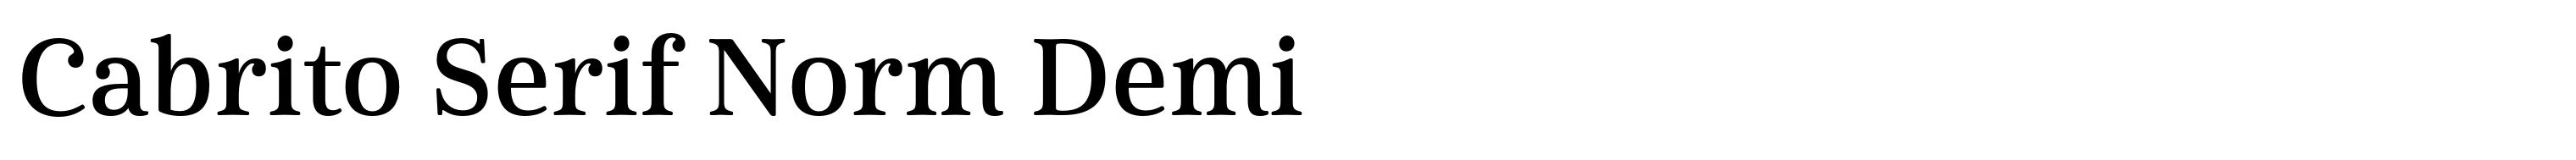 Cabrito Serif Norm Demi